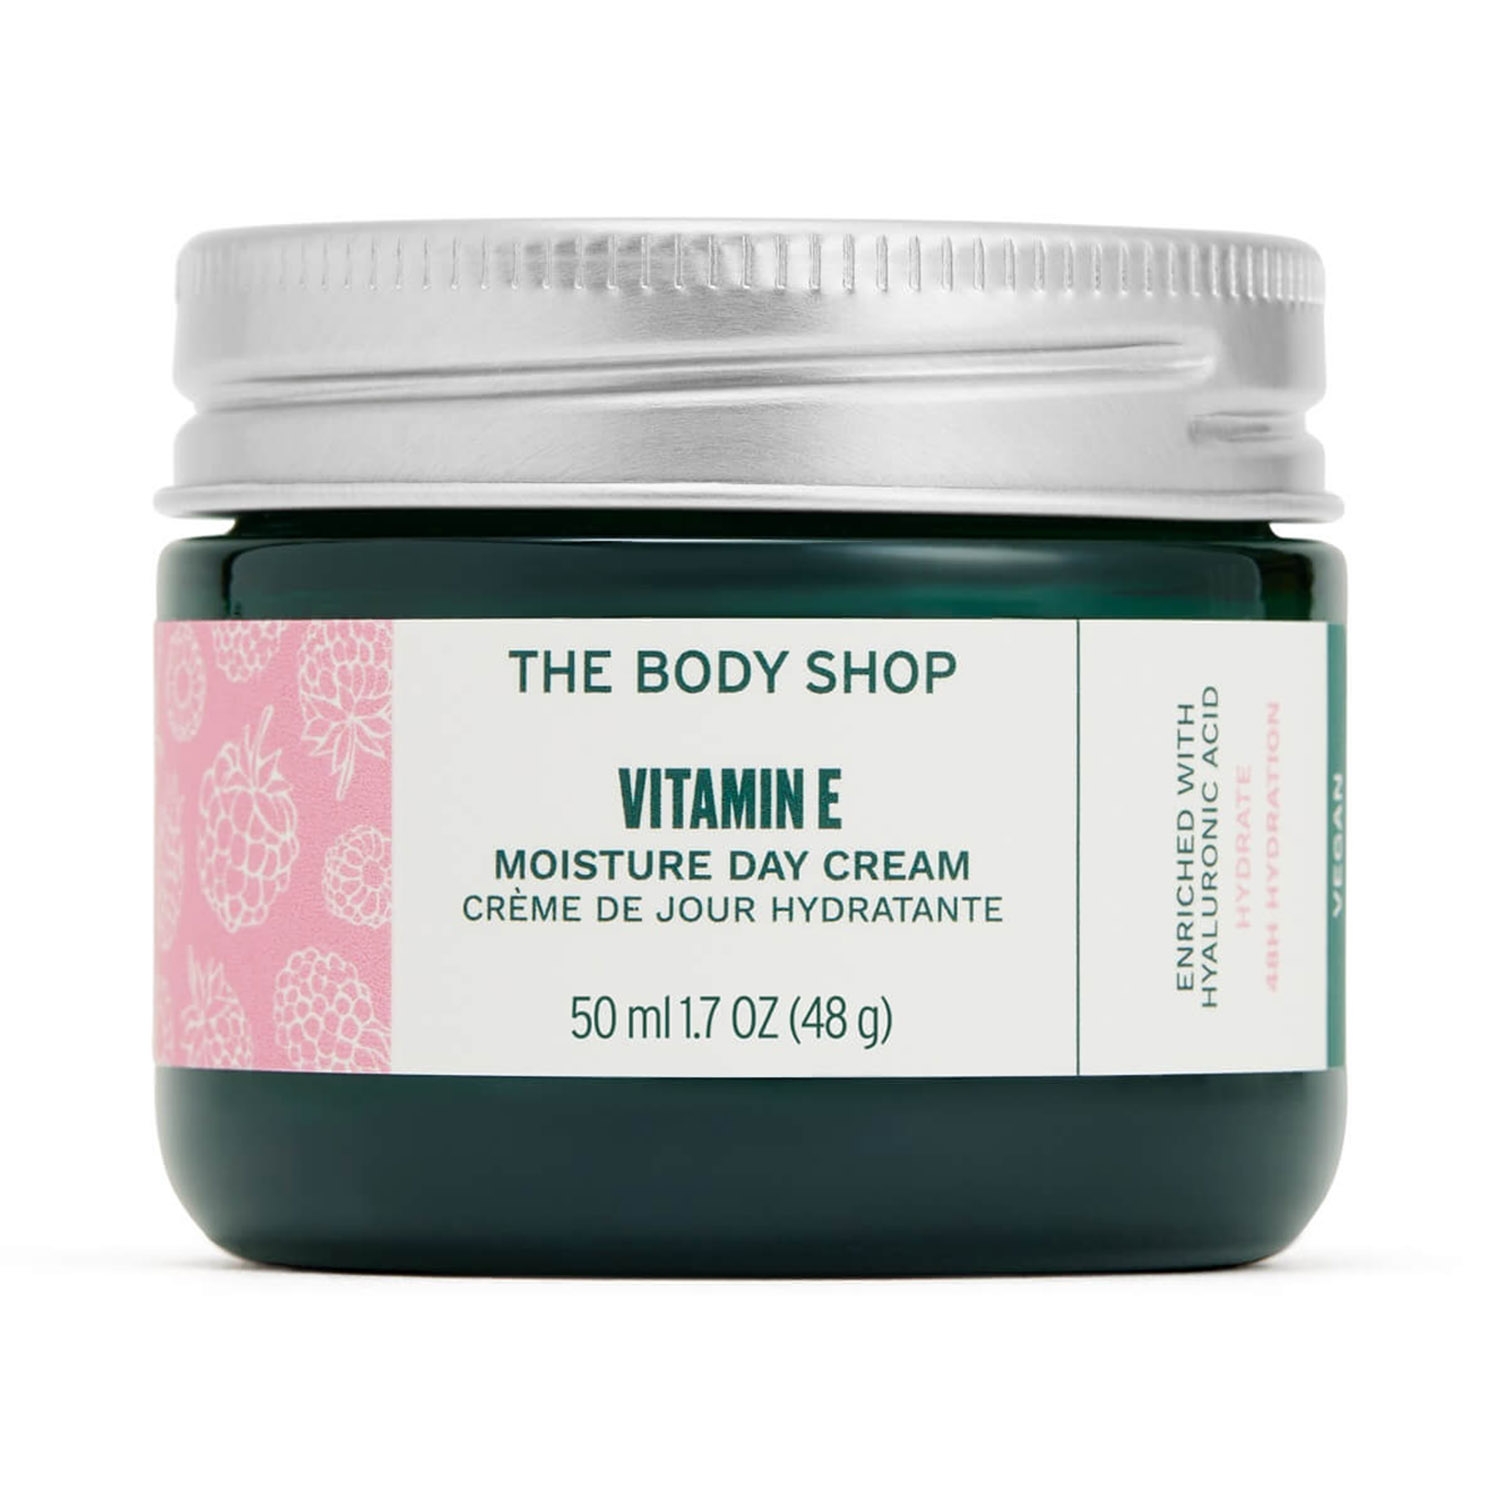 The Body Shop | The Body Shop Vitamin E Moisture Cream (50ml)